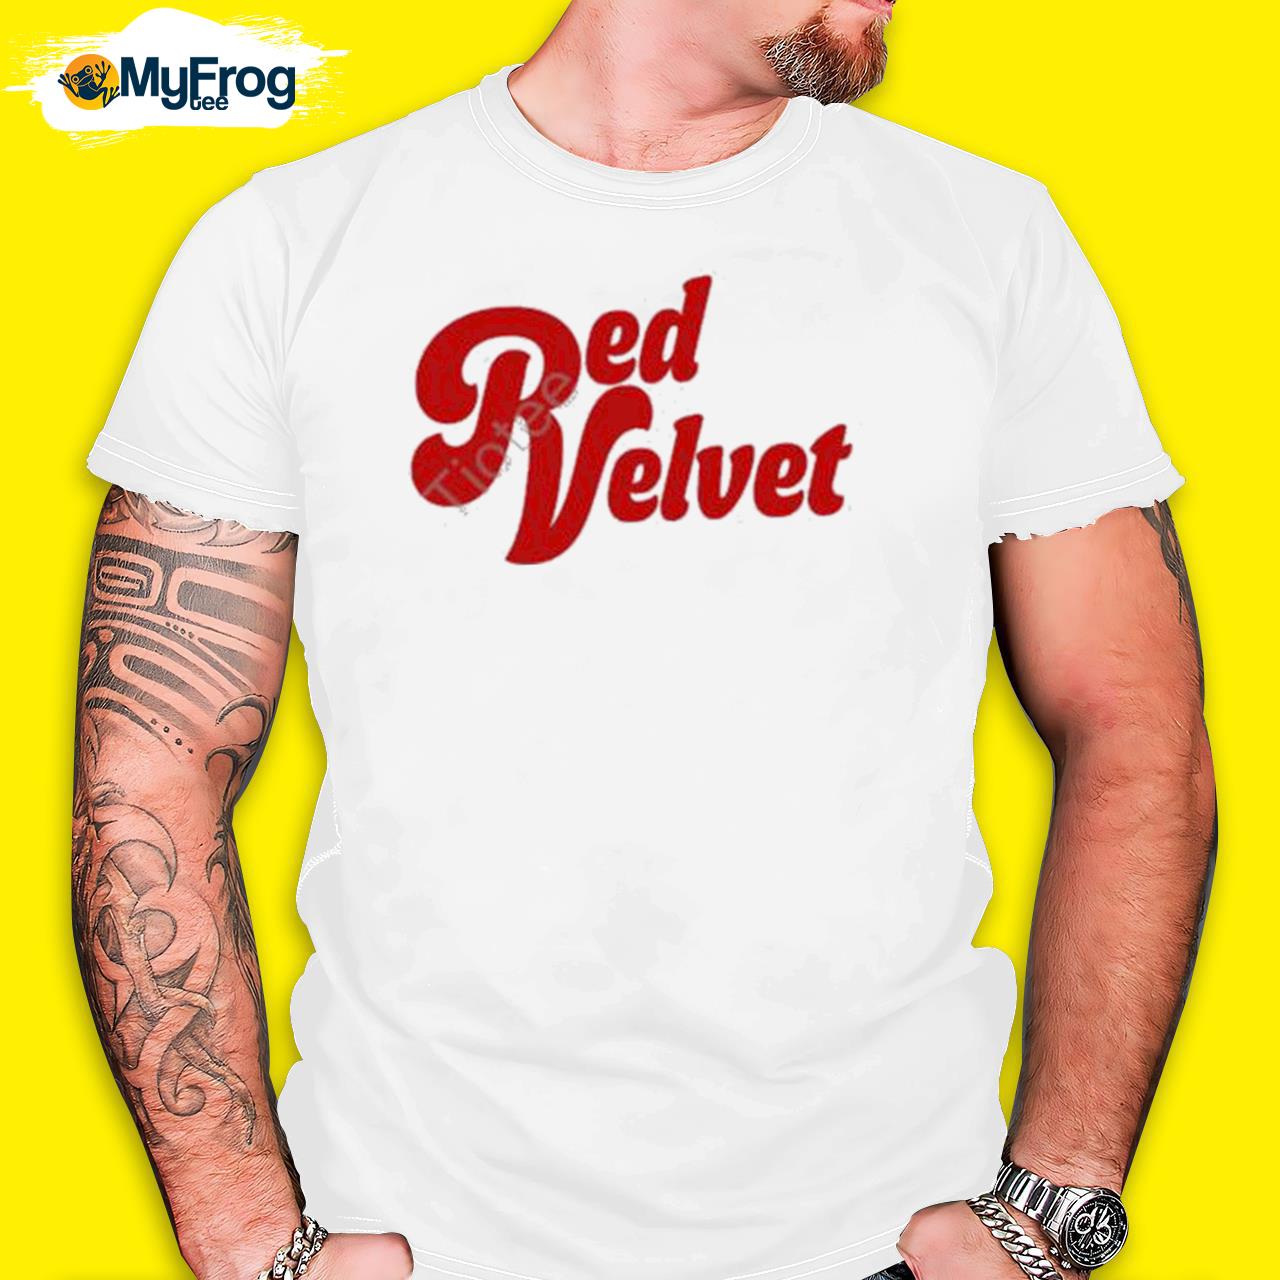 Kevin huerter wearing red velvet shirt